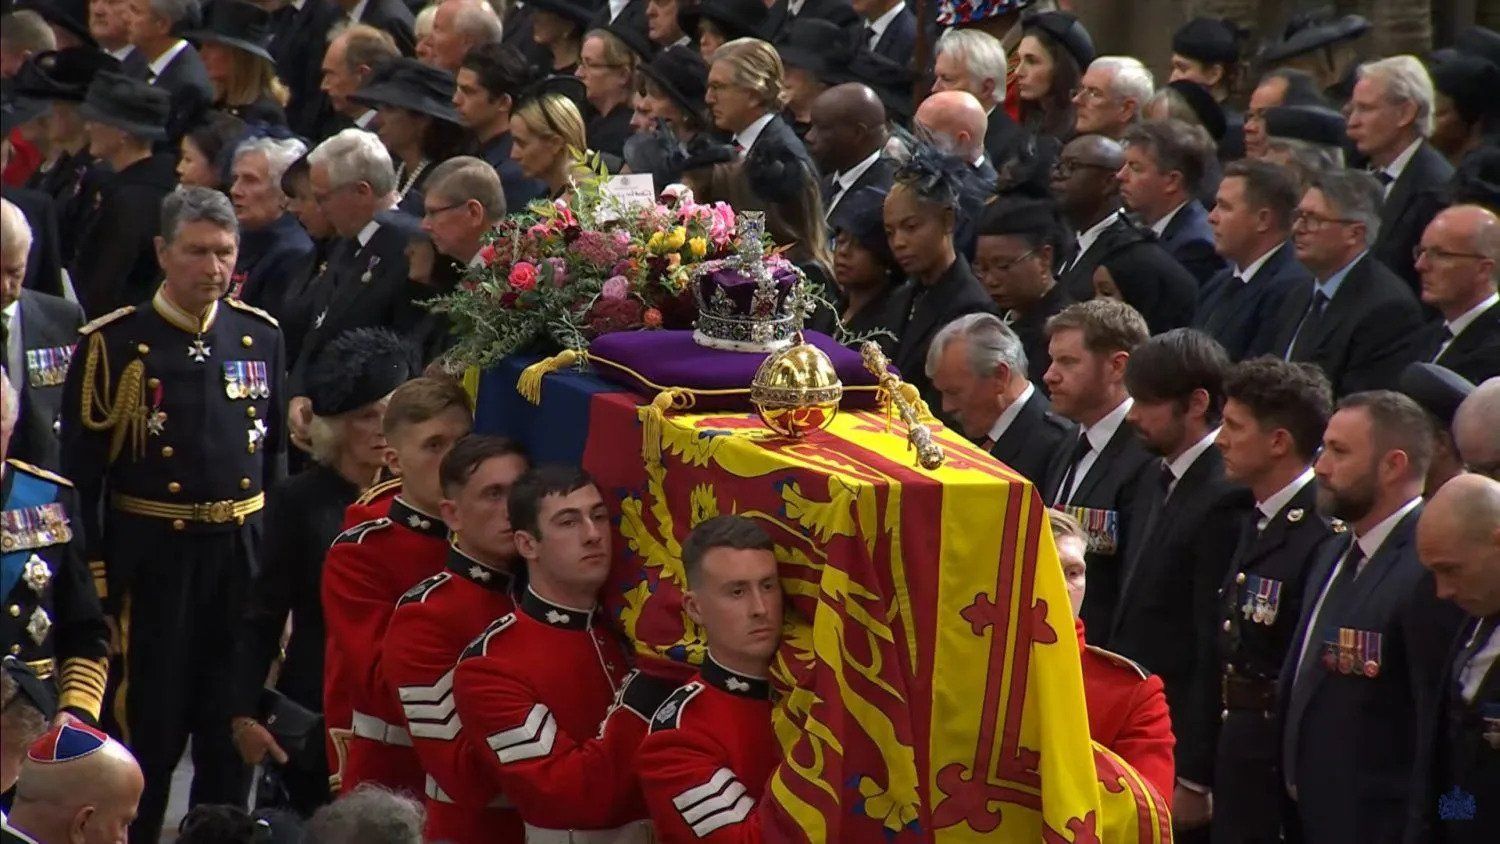 In Pictures: Queen Elizabeth II’s State Funeral